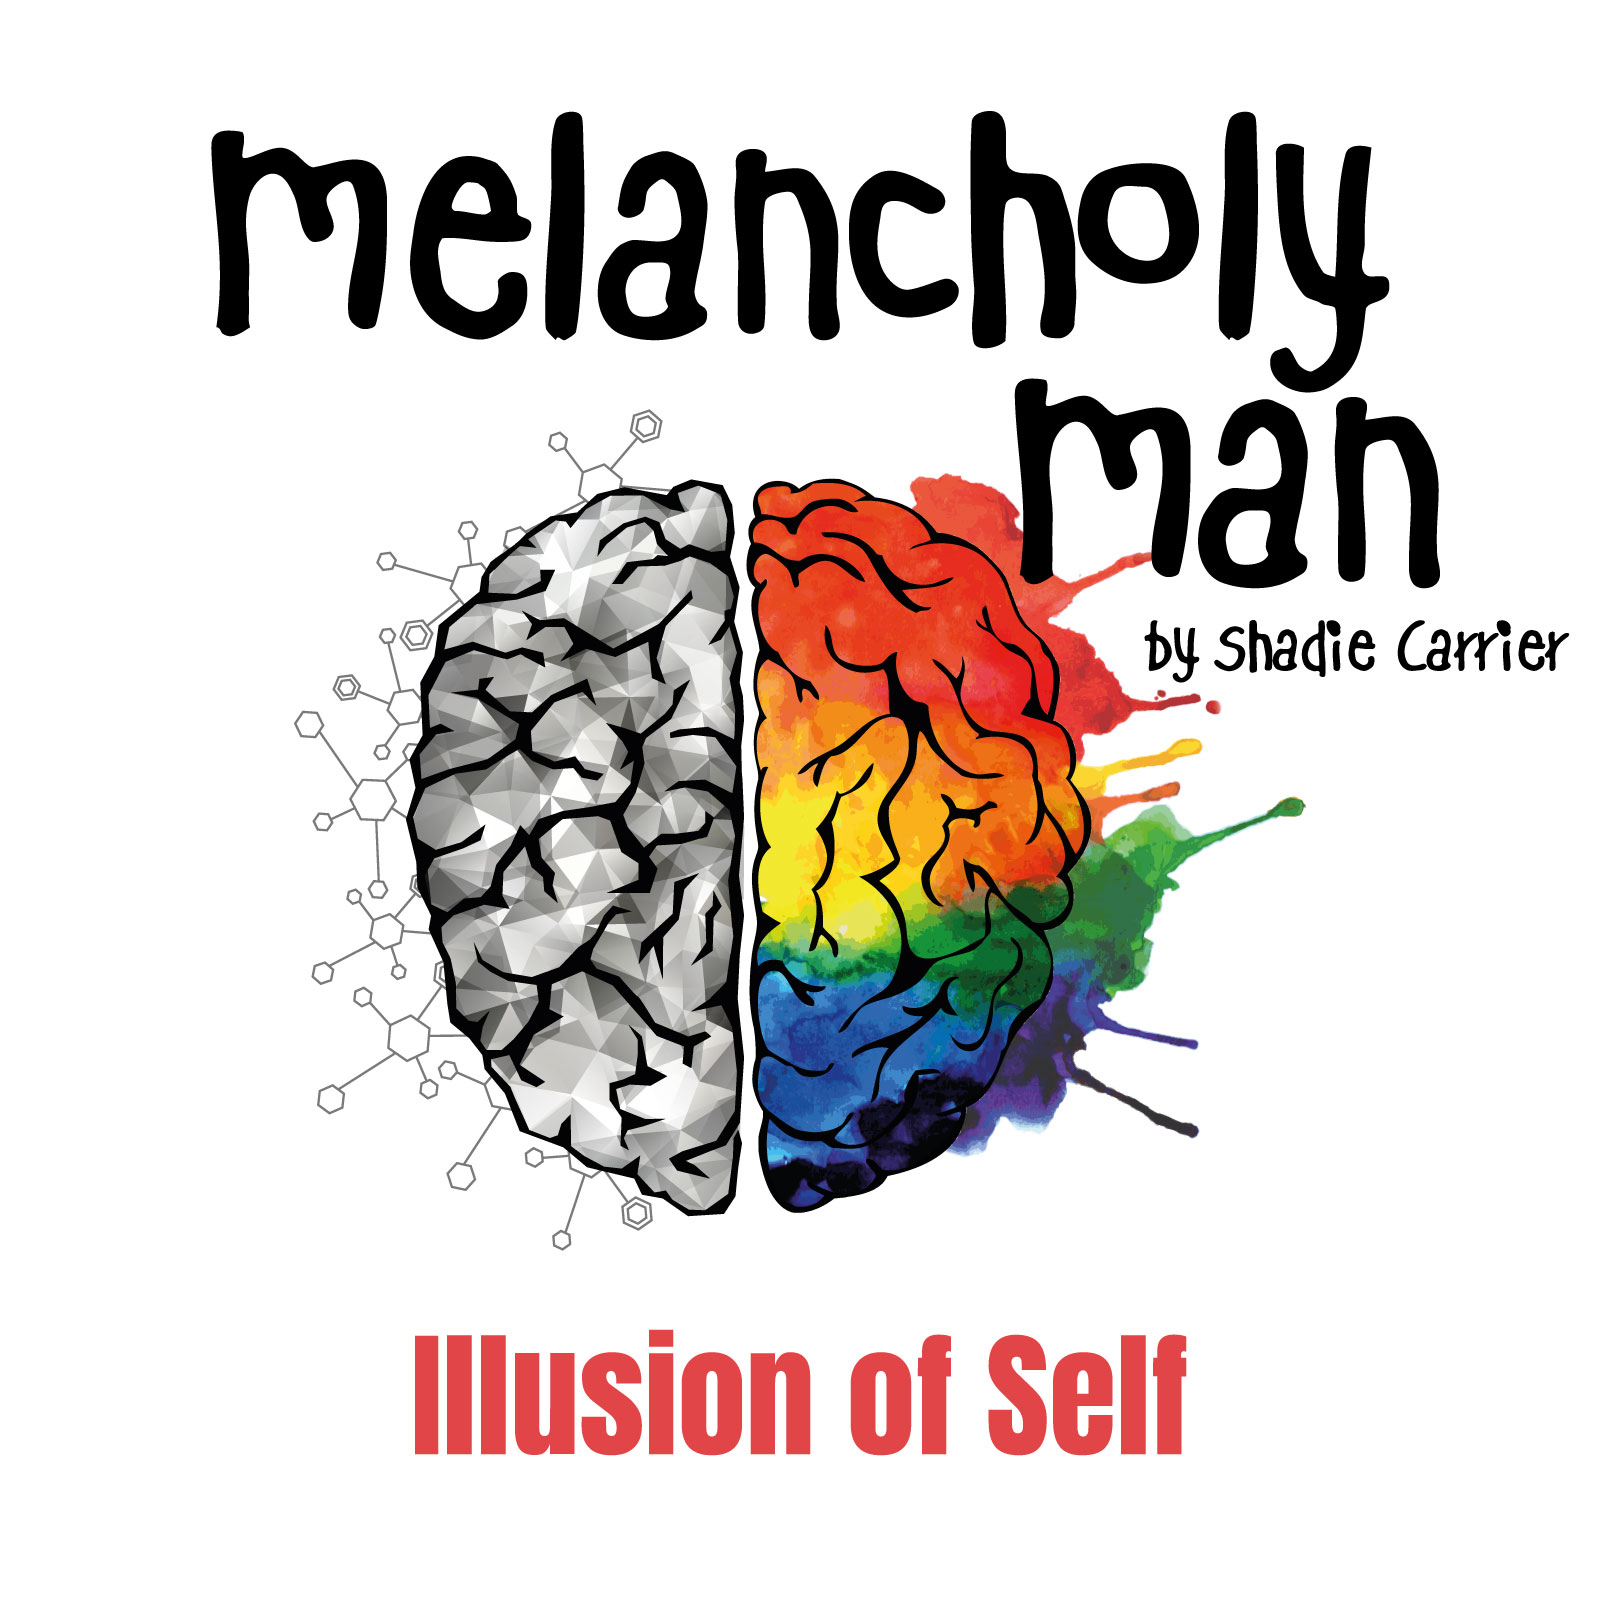 Melancholy Man #3 Illusion of Self